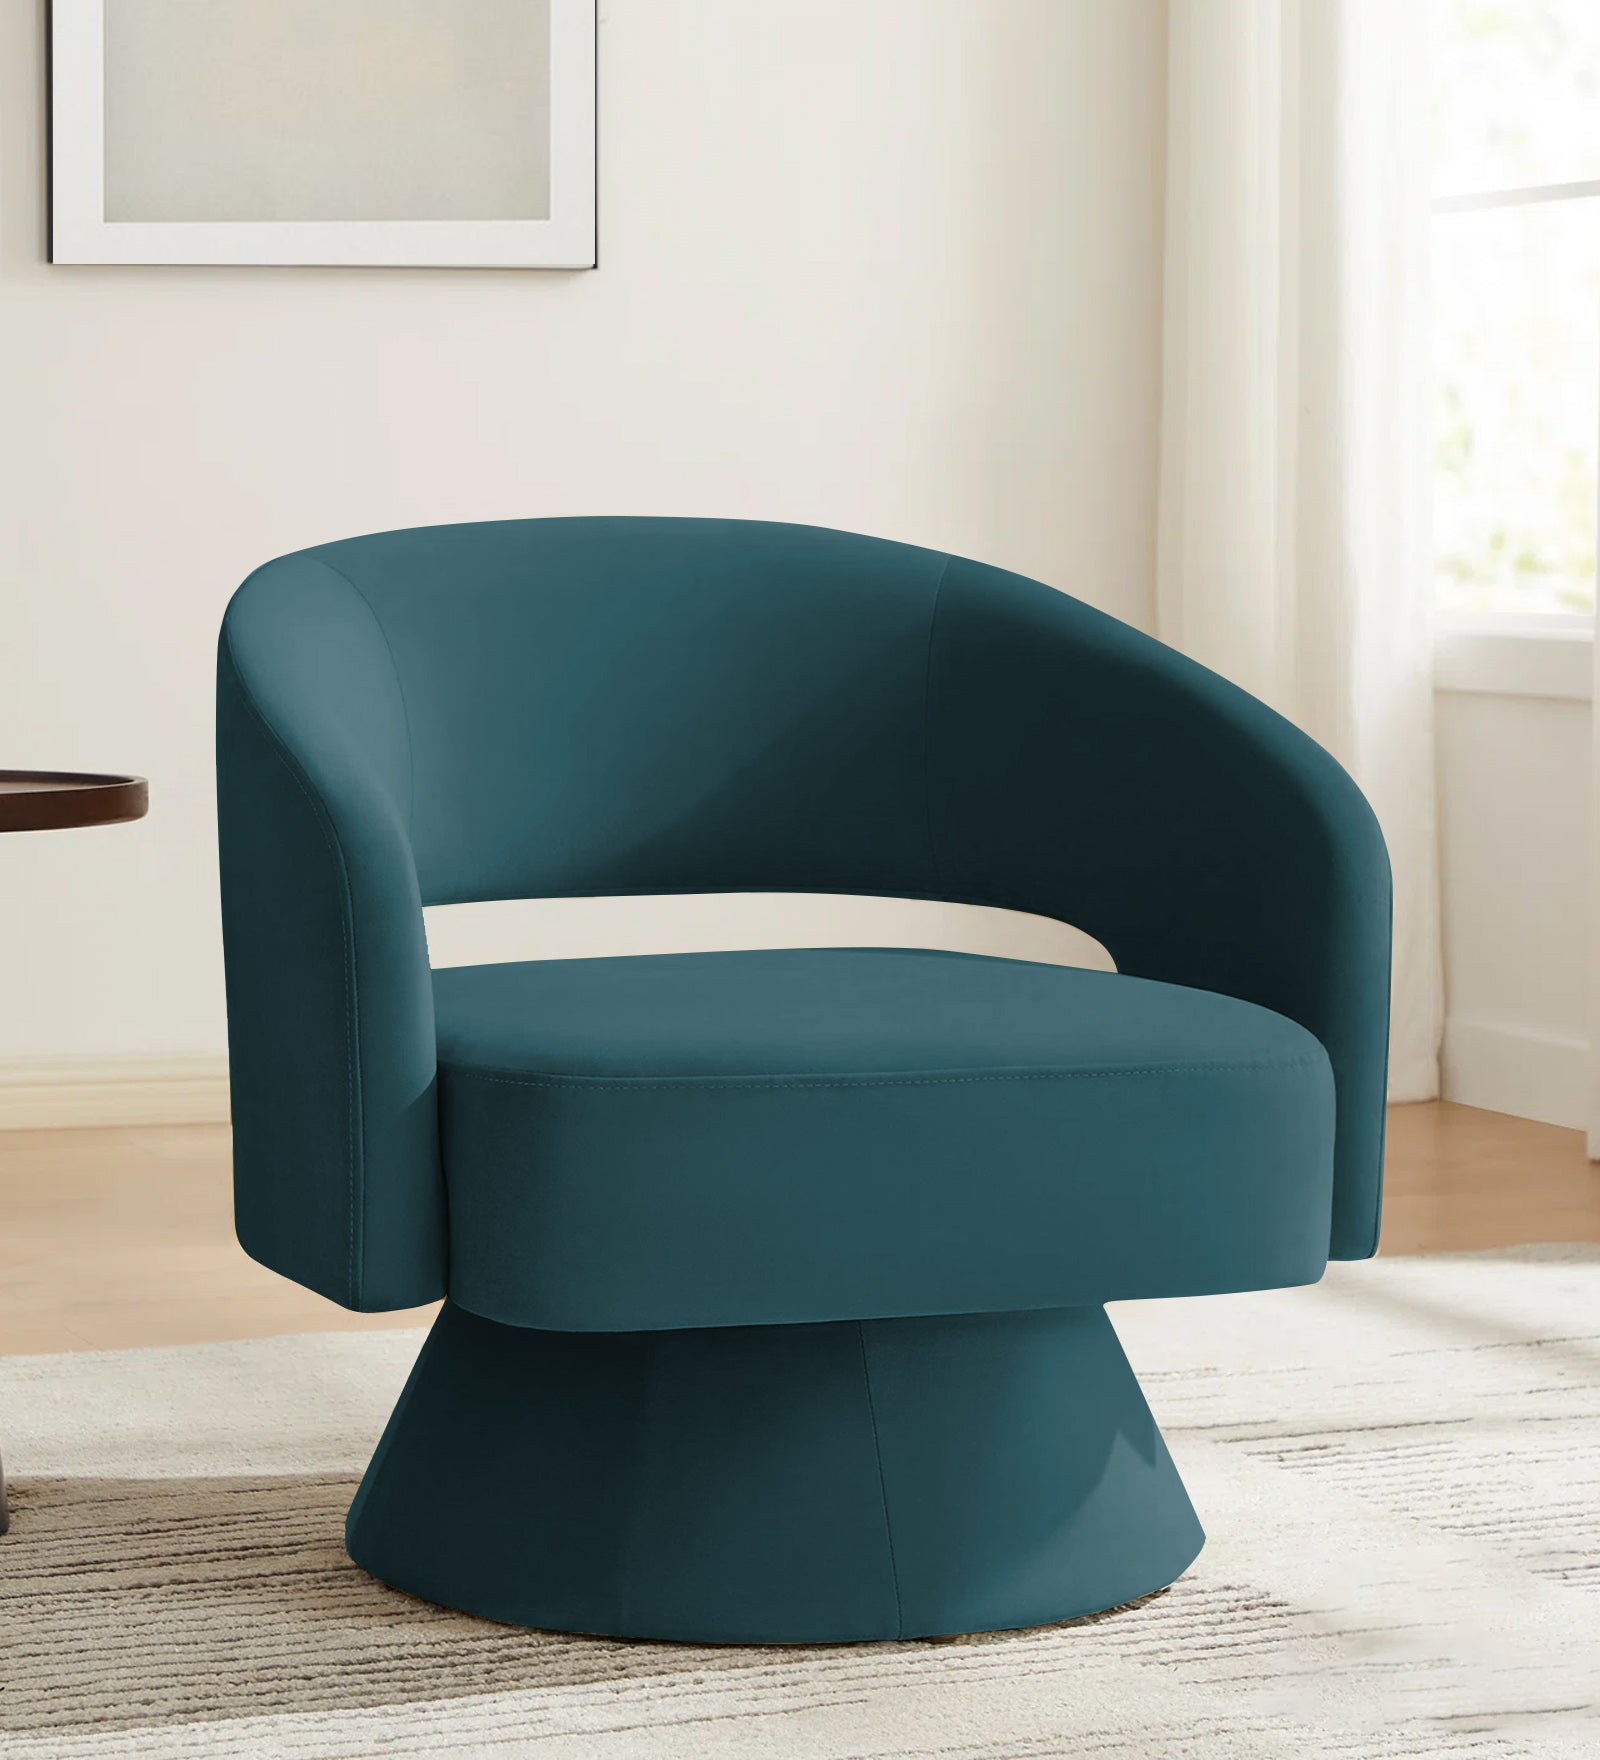 Pendra Velvet Swivel Chair in Arabian Green Colour